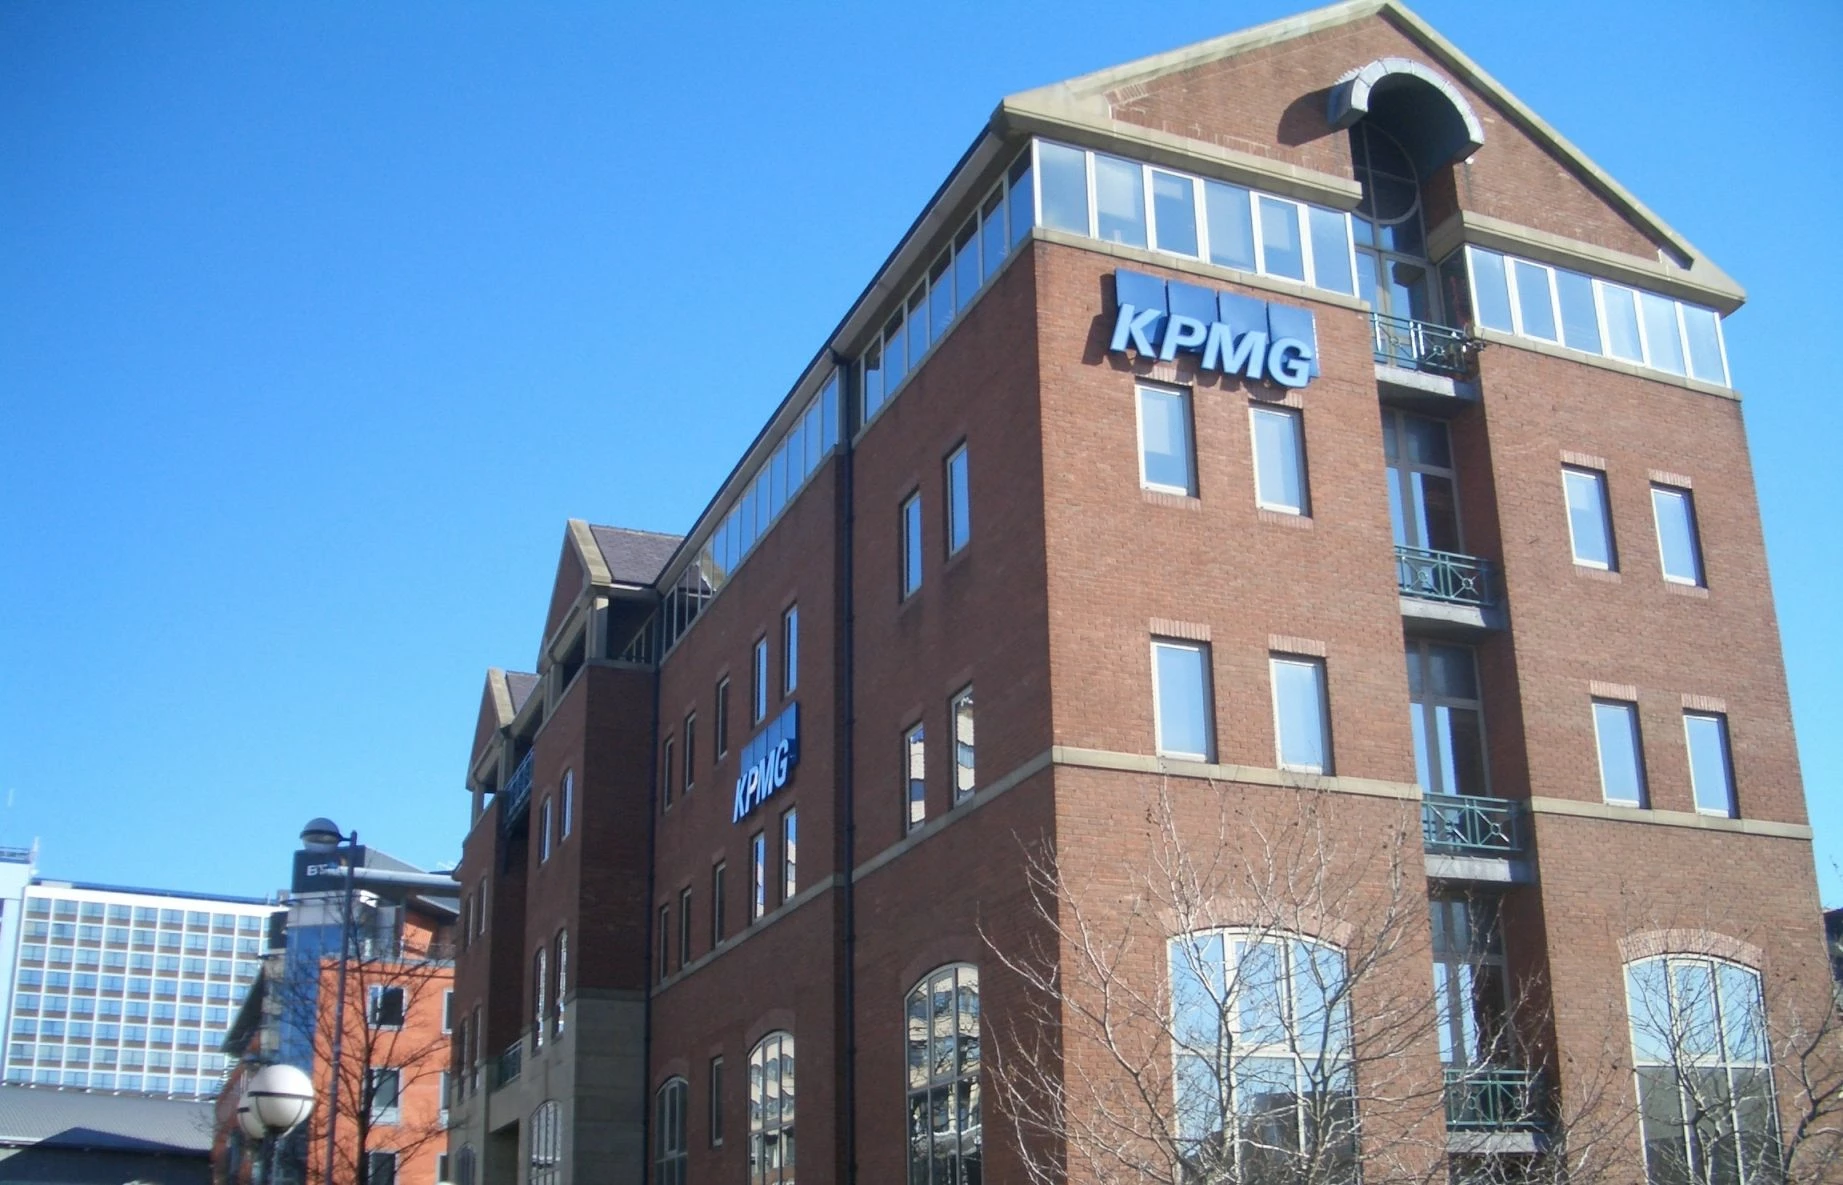 KPMG's Leeds offices